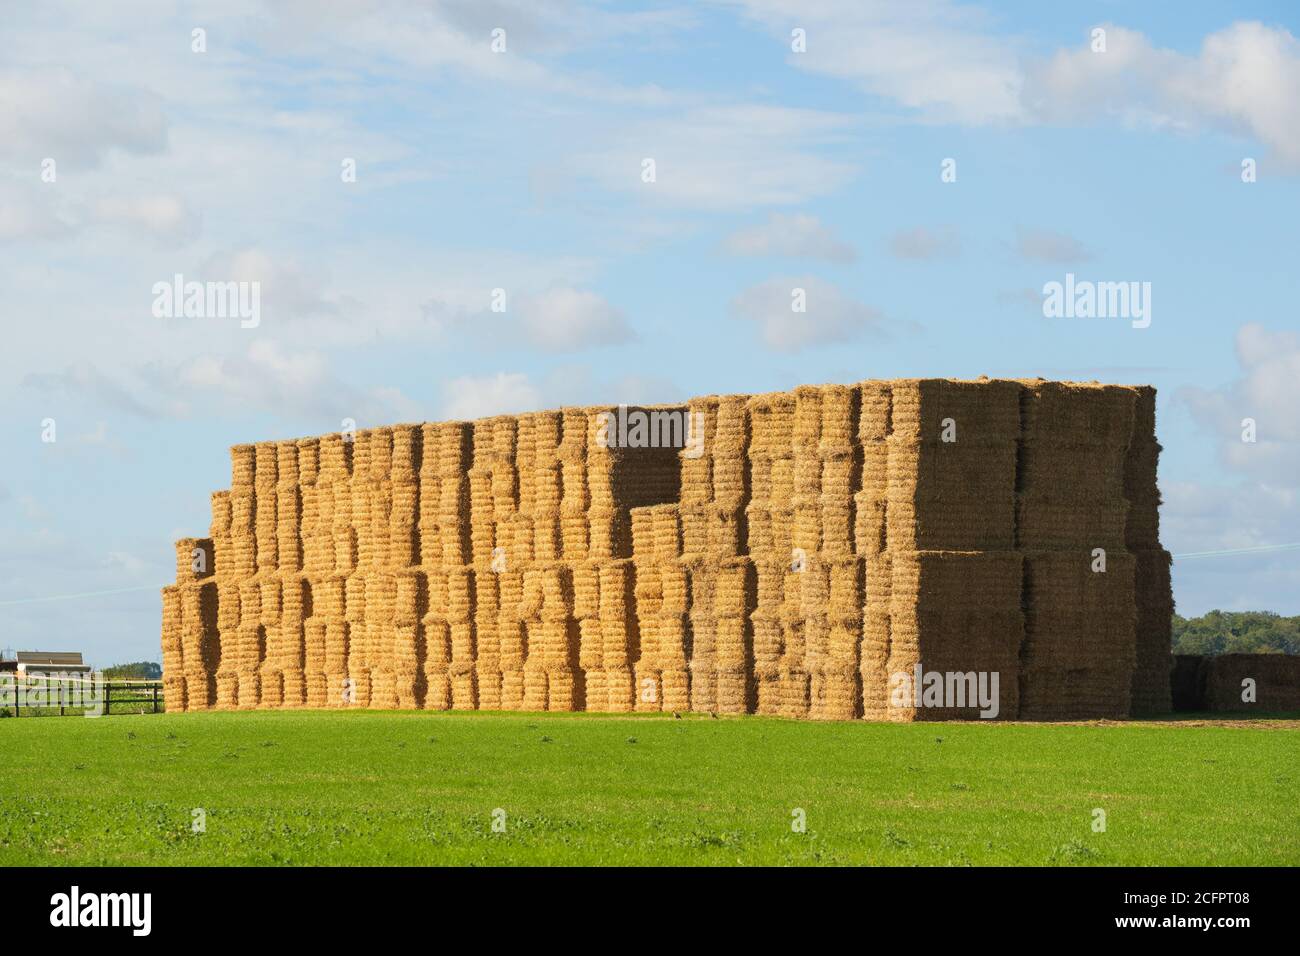 Une grande pile de balles de foin dans un champ à la fin de l'été. Beaucoup Hadham, Hertfordshire. Angleterre. ROYAUME-UNI Banque D'Images